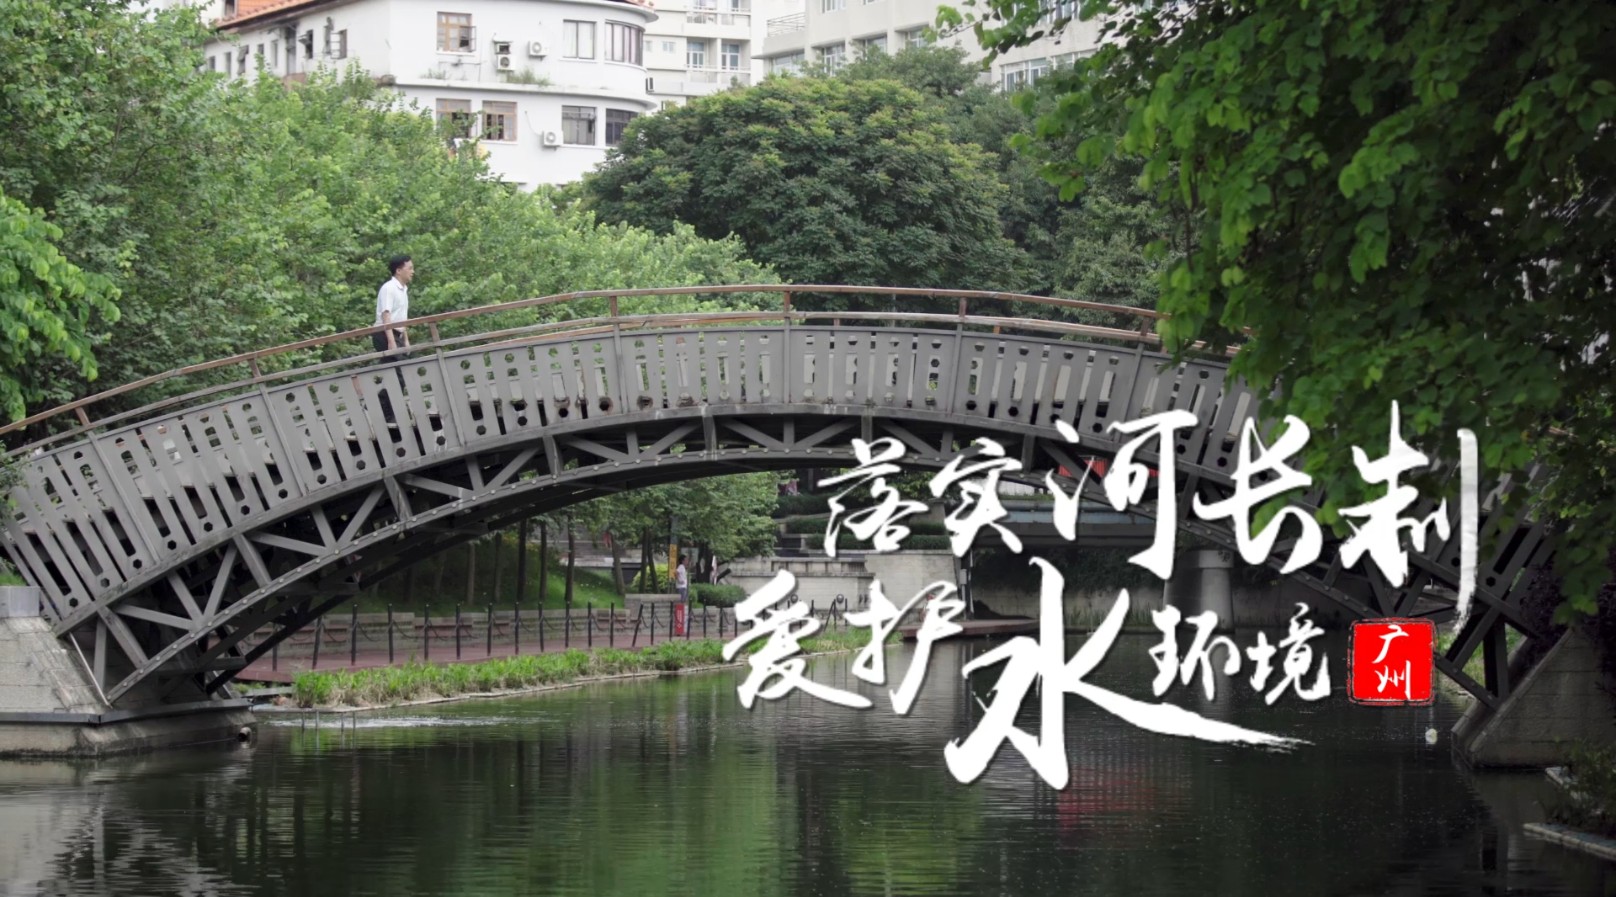 广州市水务局纪录片《你好！河长》15秒TVC版 